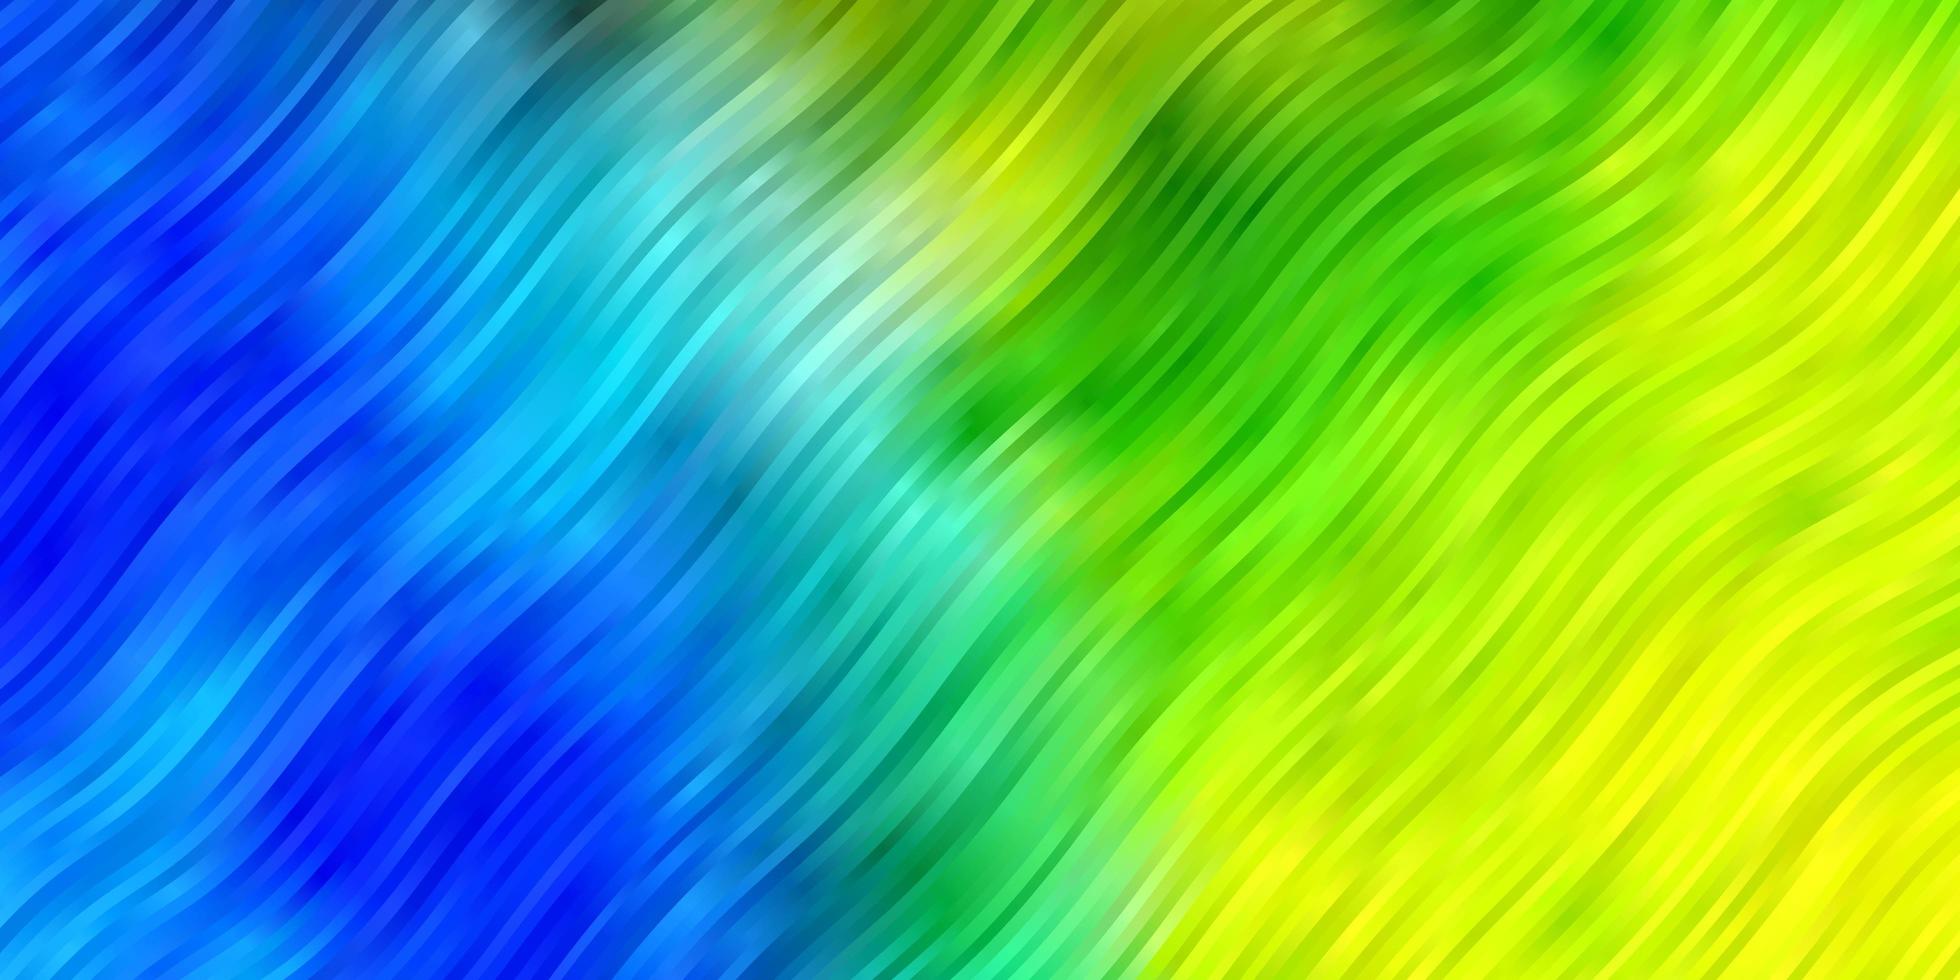 ljusblå, grön vektorbakgrund med linjer vektor